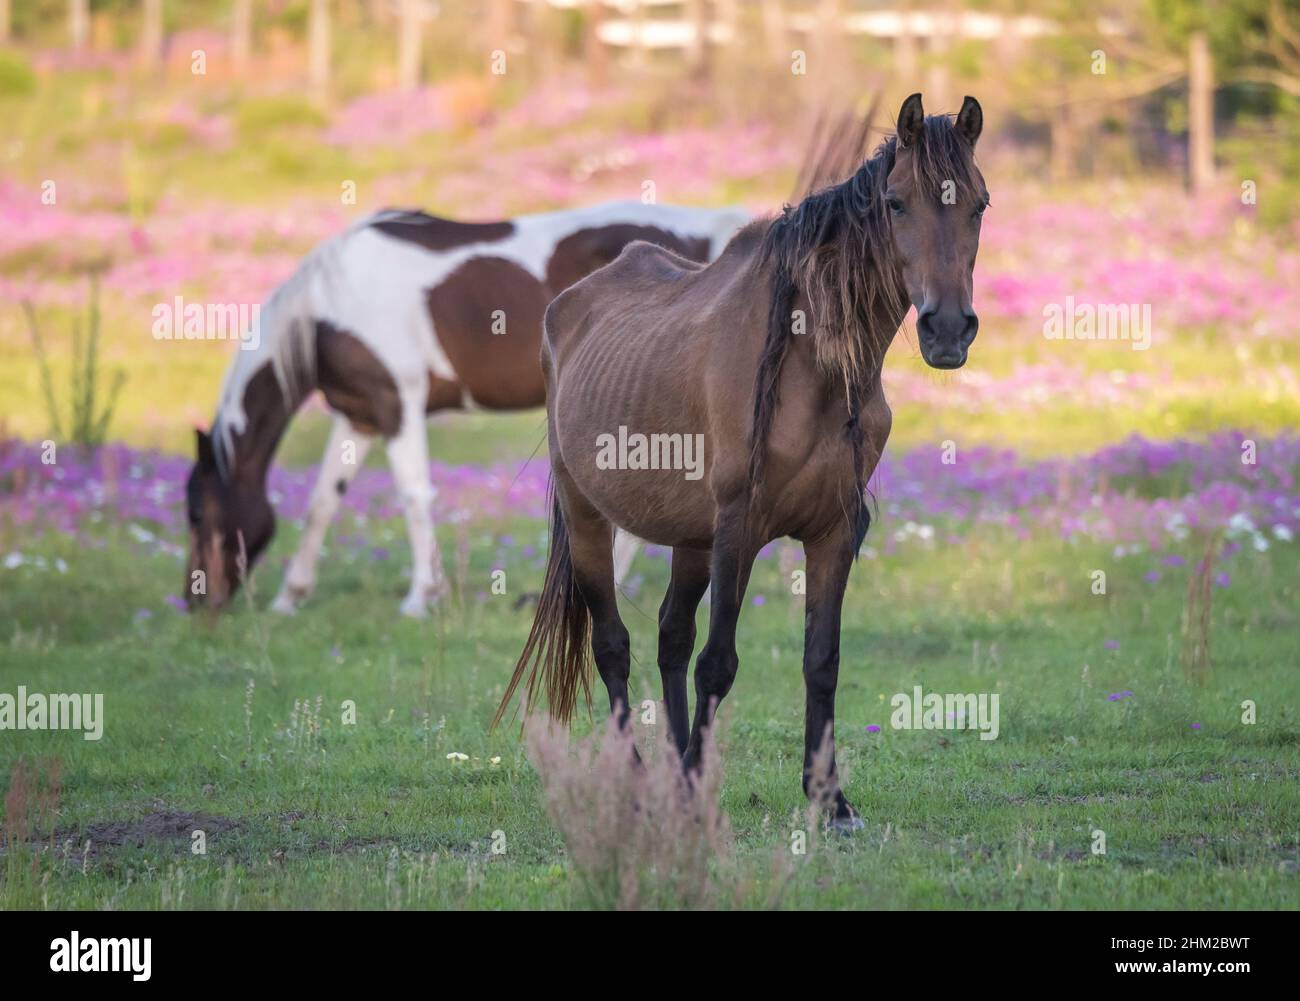 Anämisches, ungepftes Pferd mit Knochen, die sich im Wildblumenfeld zeigen Stockfoto